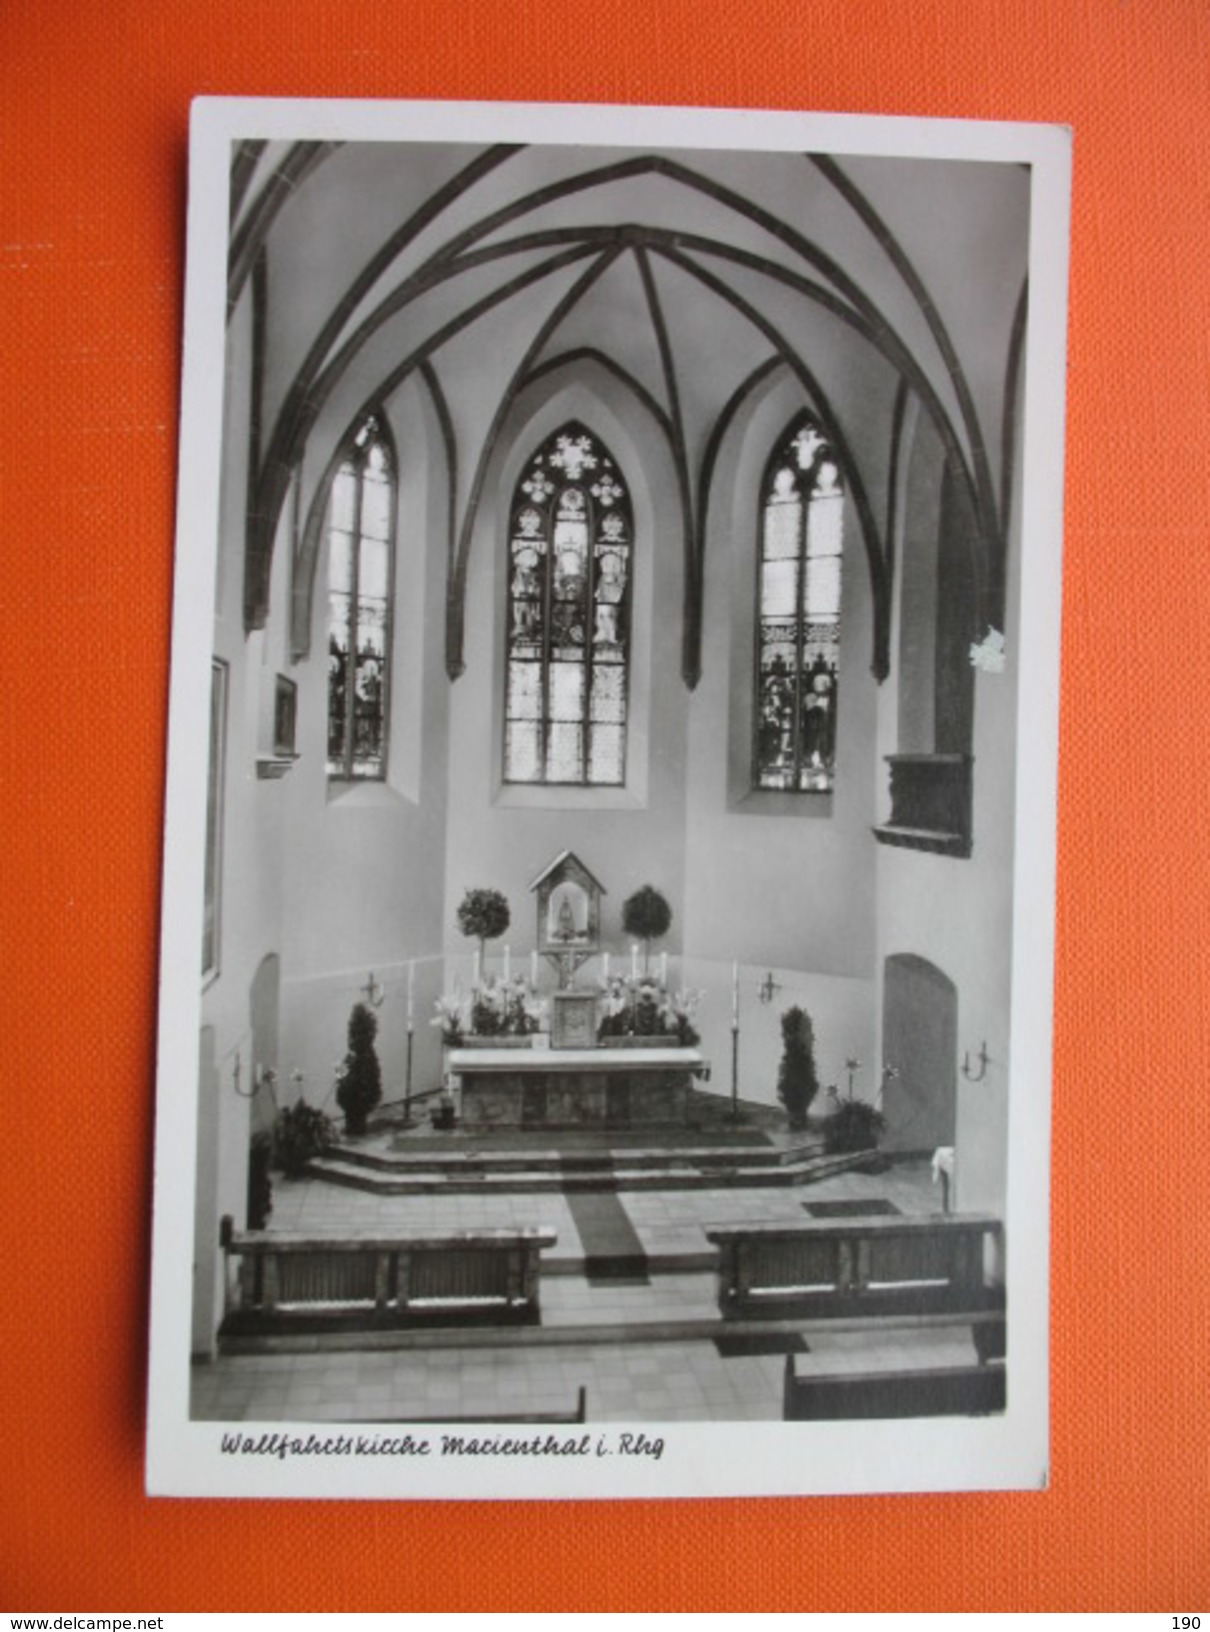 Walfahrtskirche Marienthal I.Rhg - Rheingau